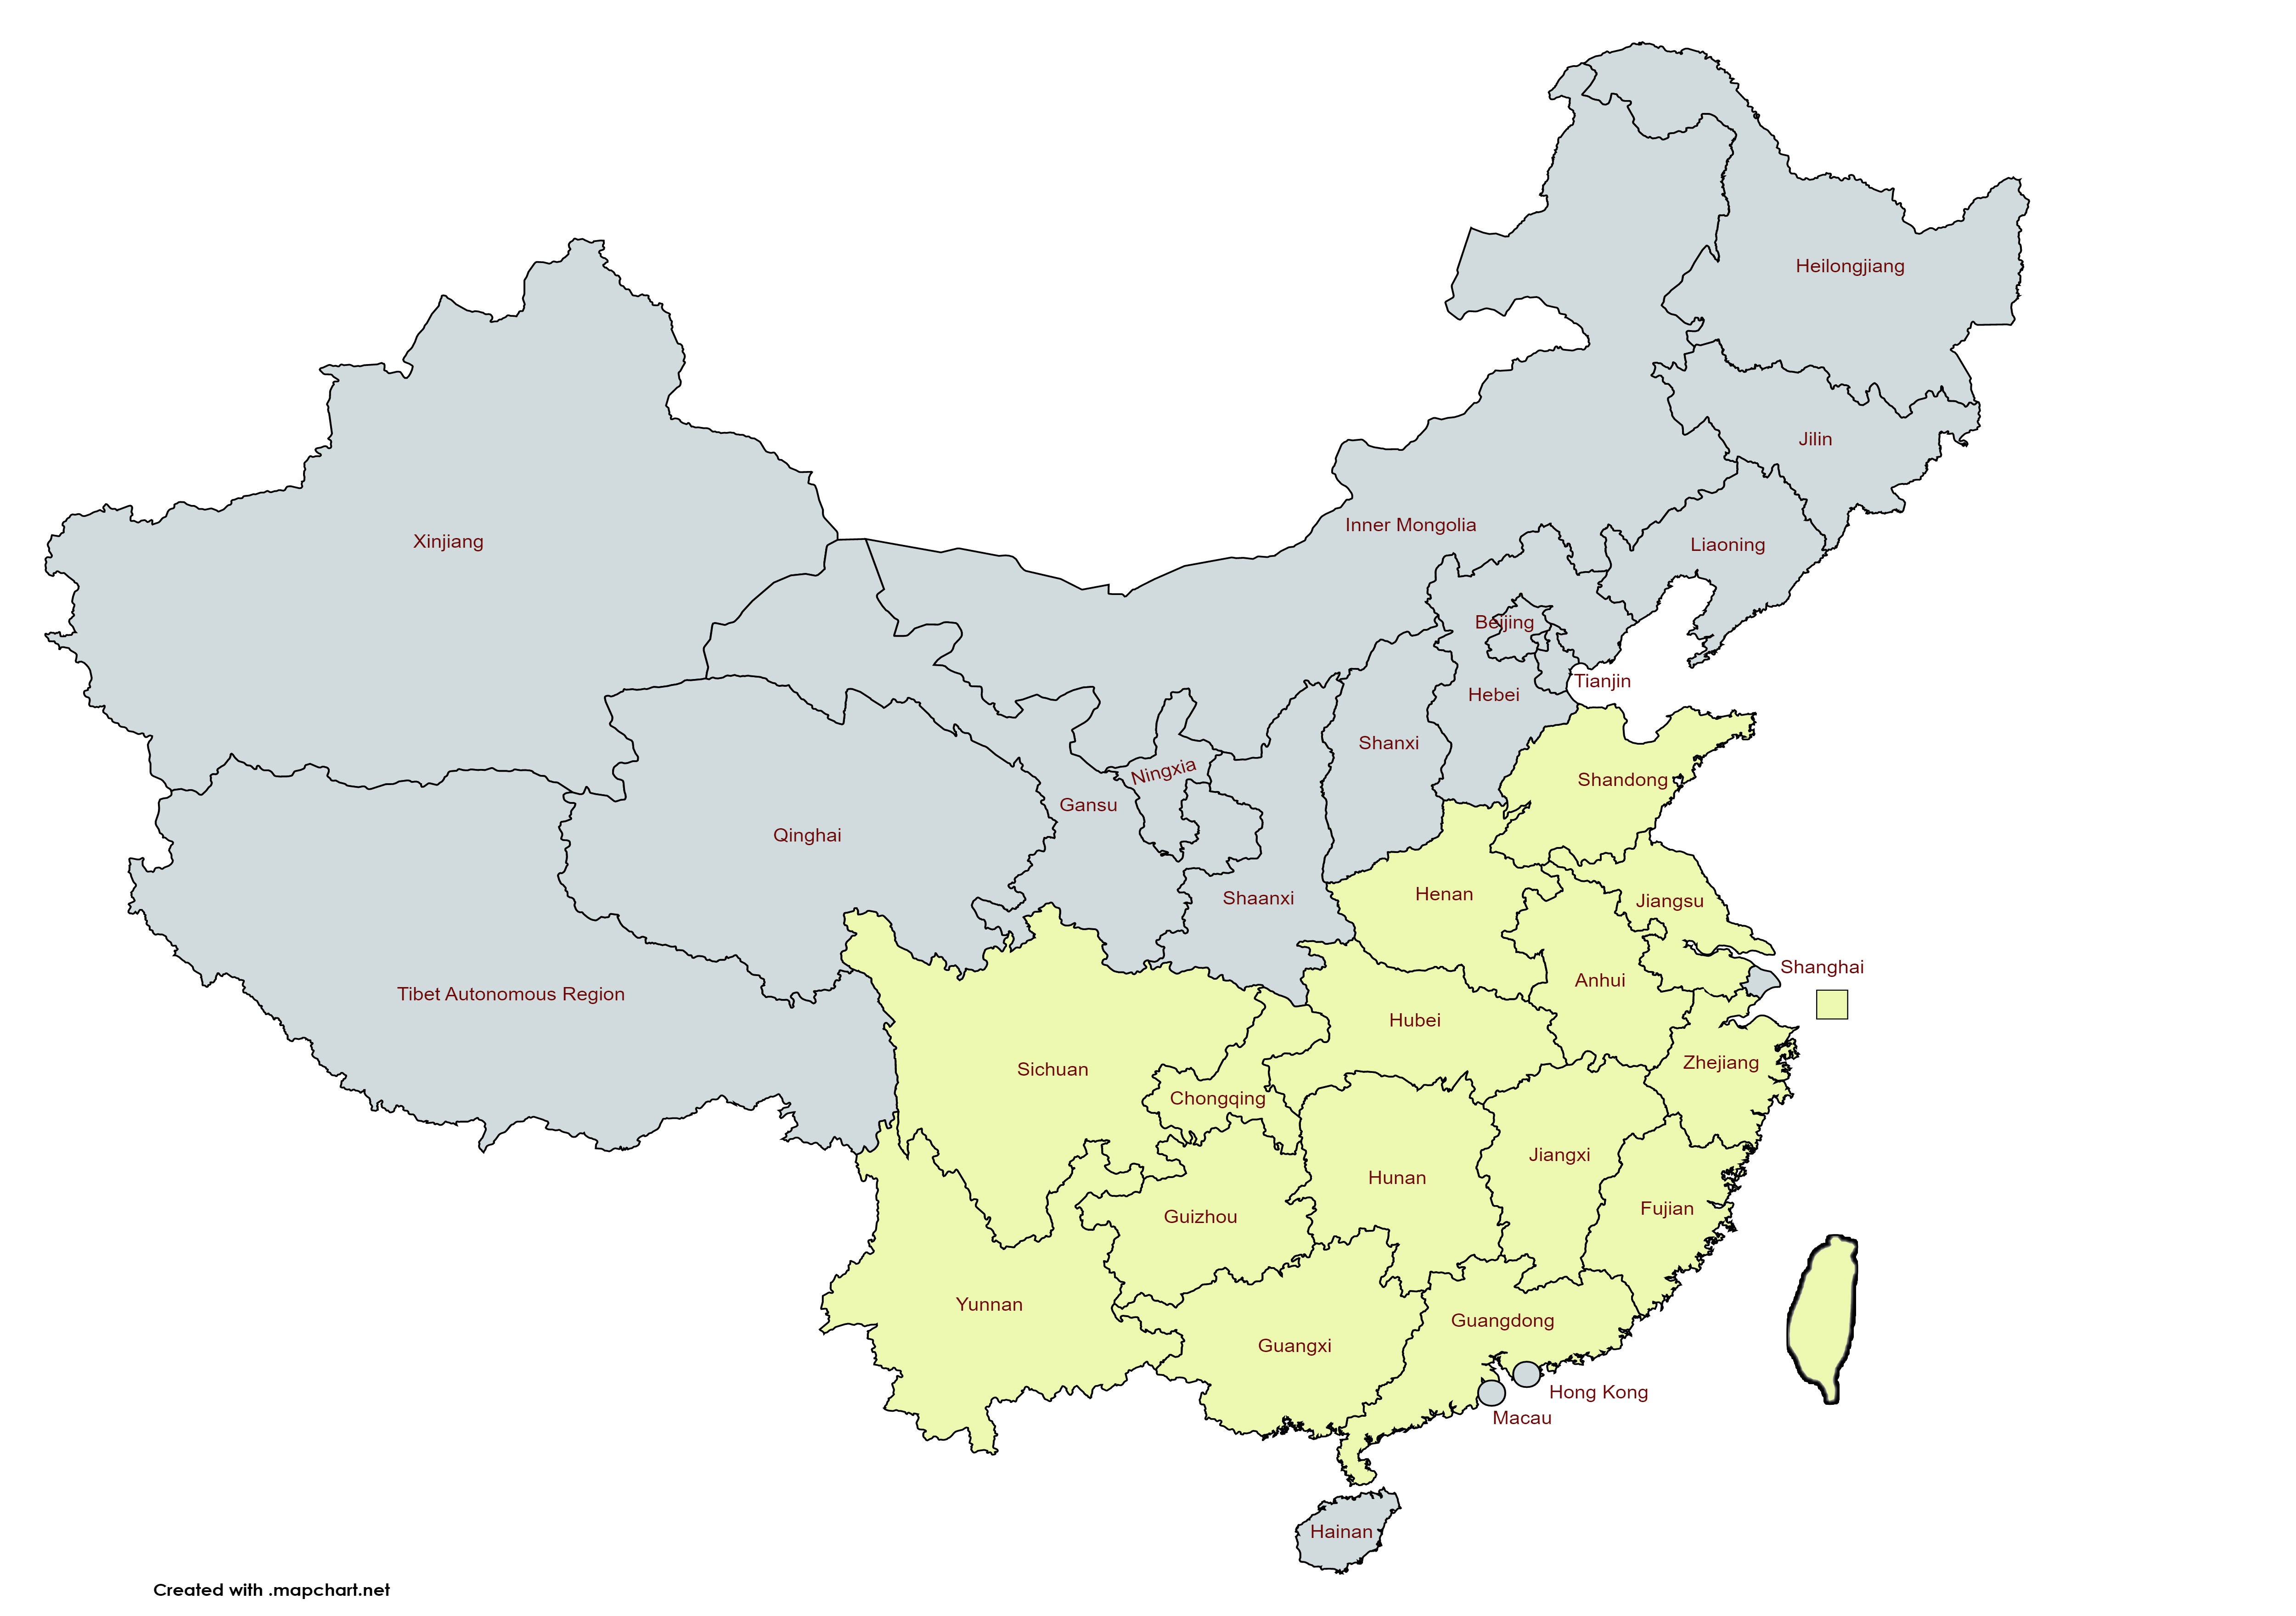 Карта Китая. Желтым отмечены чаепроизводящие регионы Китая и о.Тайвань